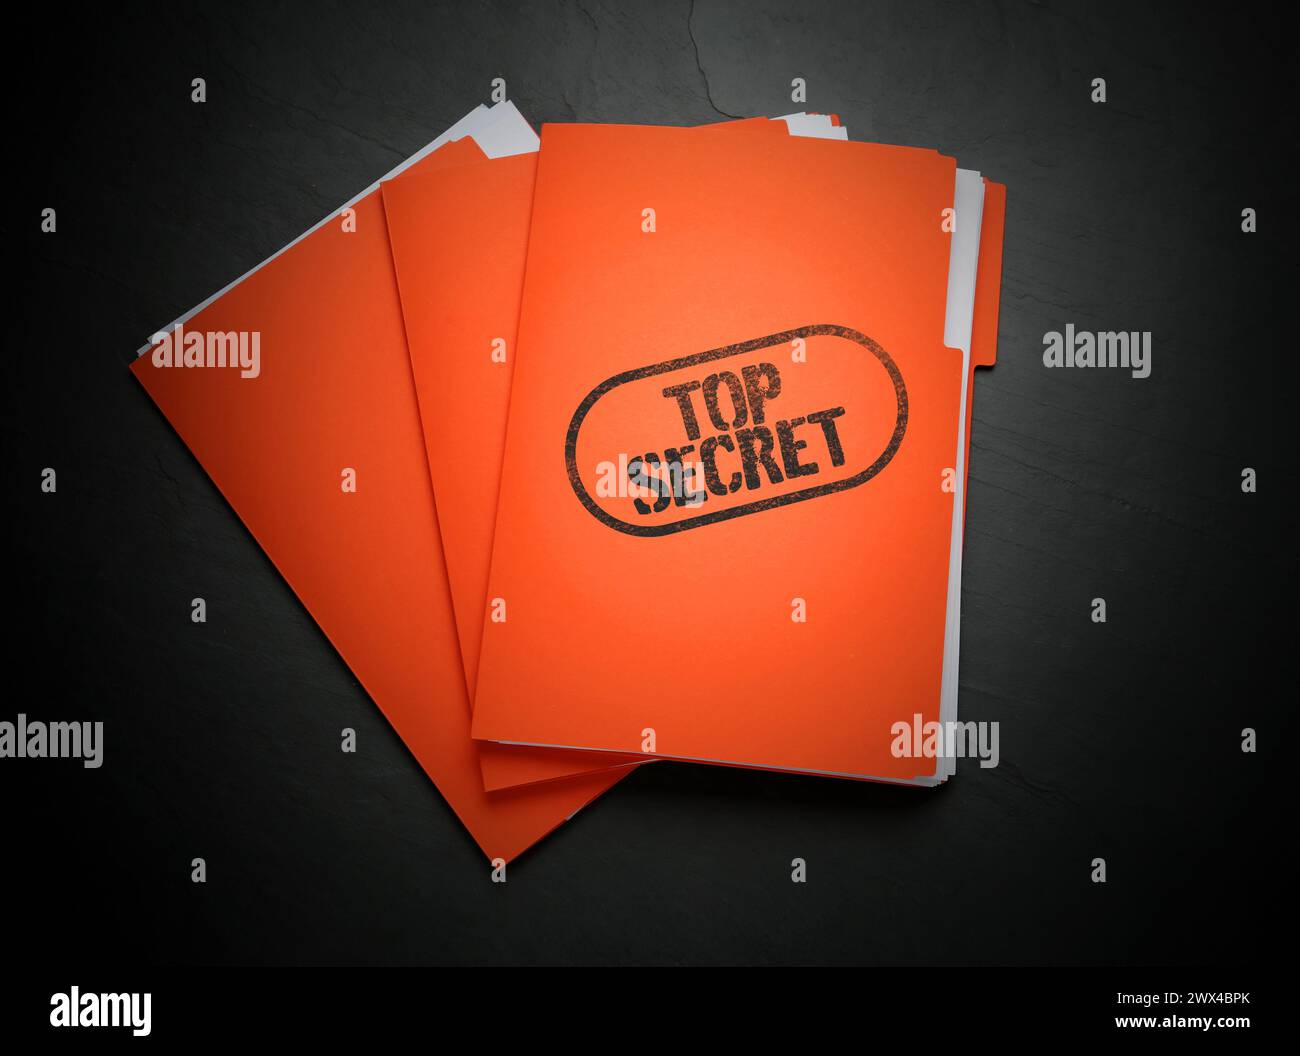 Streng geheimer Stempel. Orangefarbene Dateien mit Dokumenten auf schwarzer Tabelle, Draufsicht Stockfoto